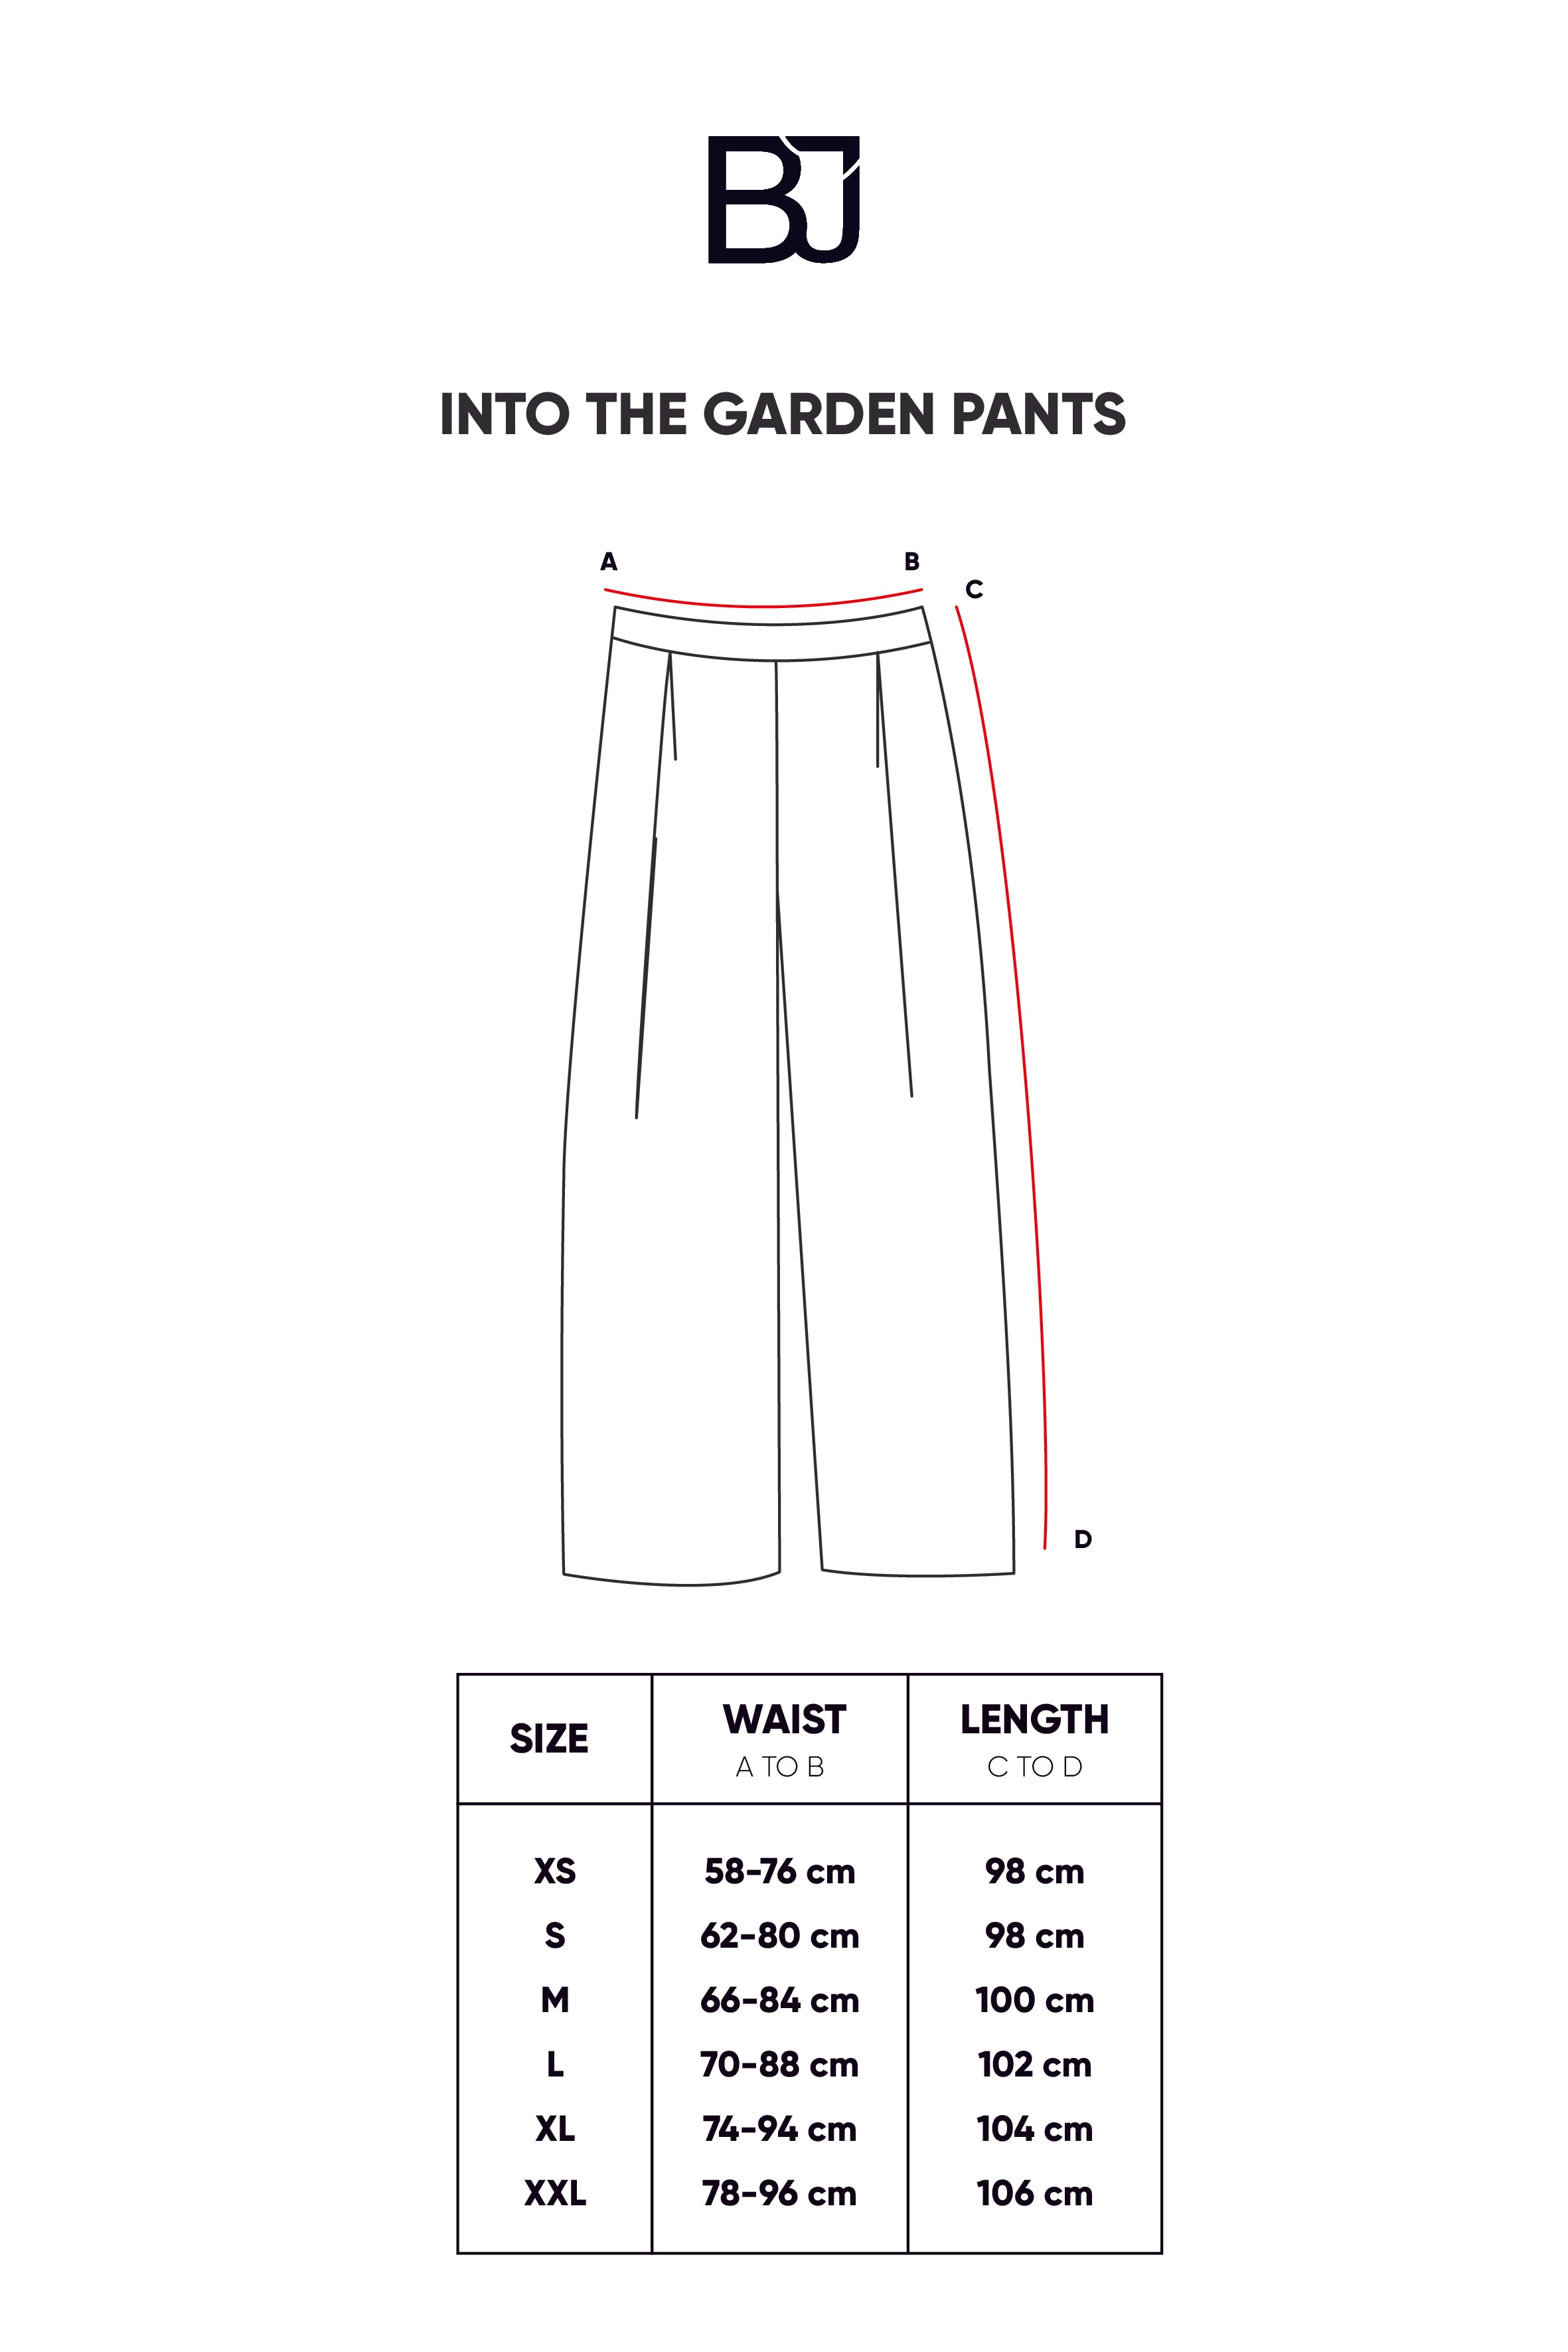 Fletcher Jones Mens Trousers Pants Size 96/76 Beige Wool Blend | eBay